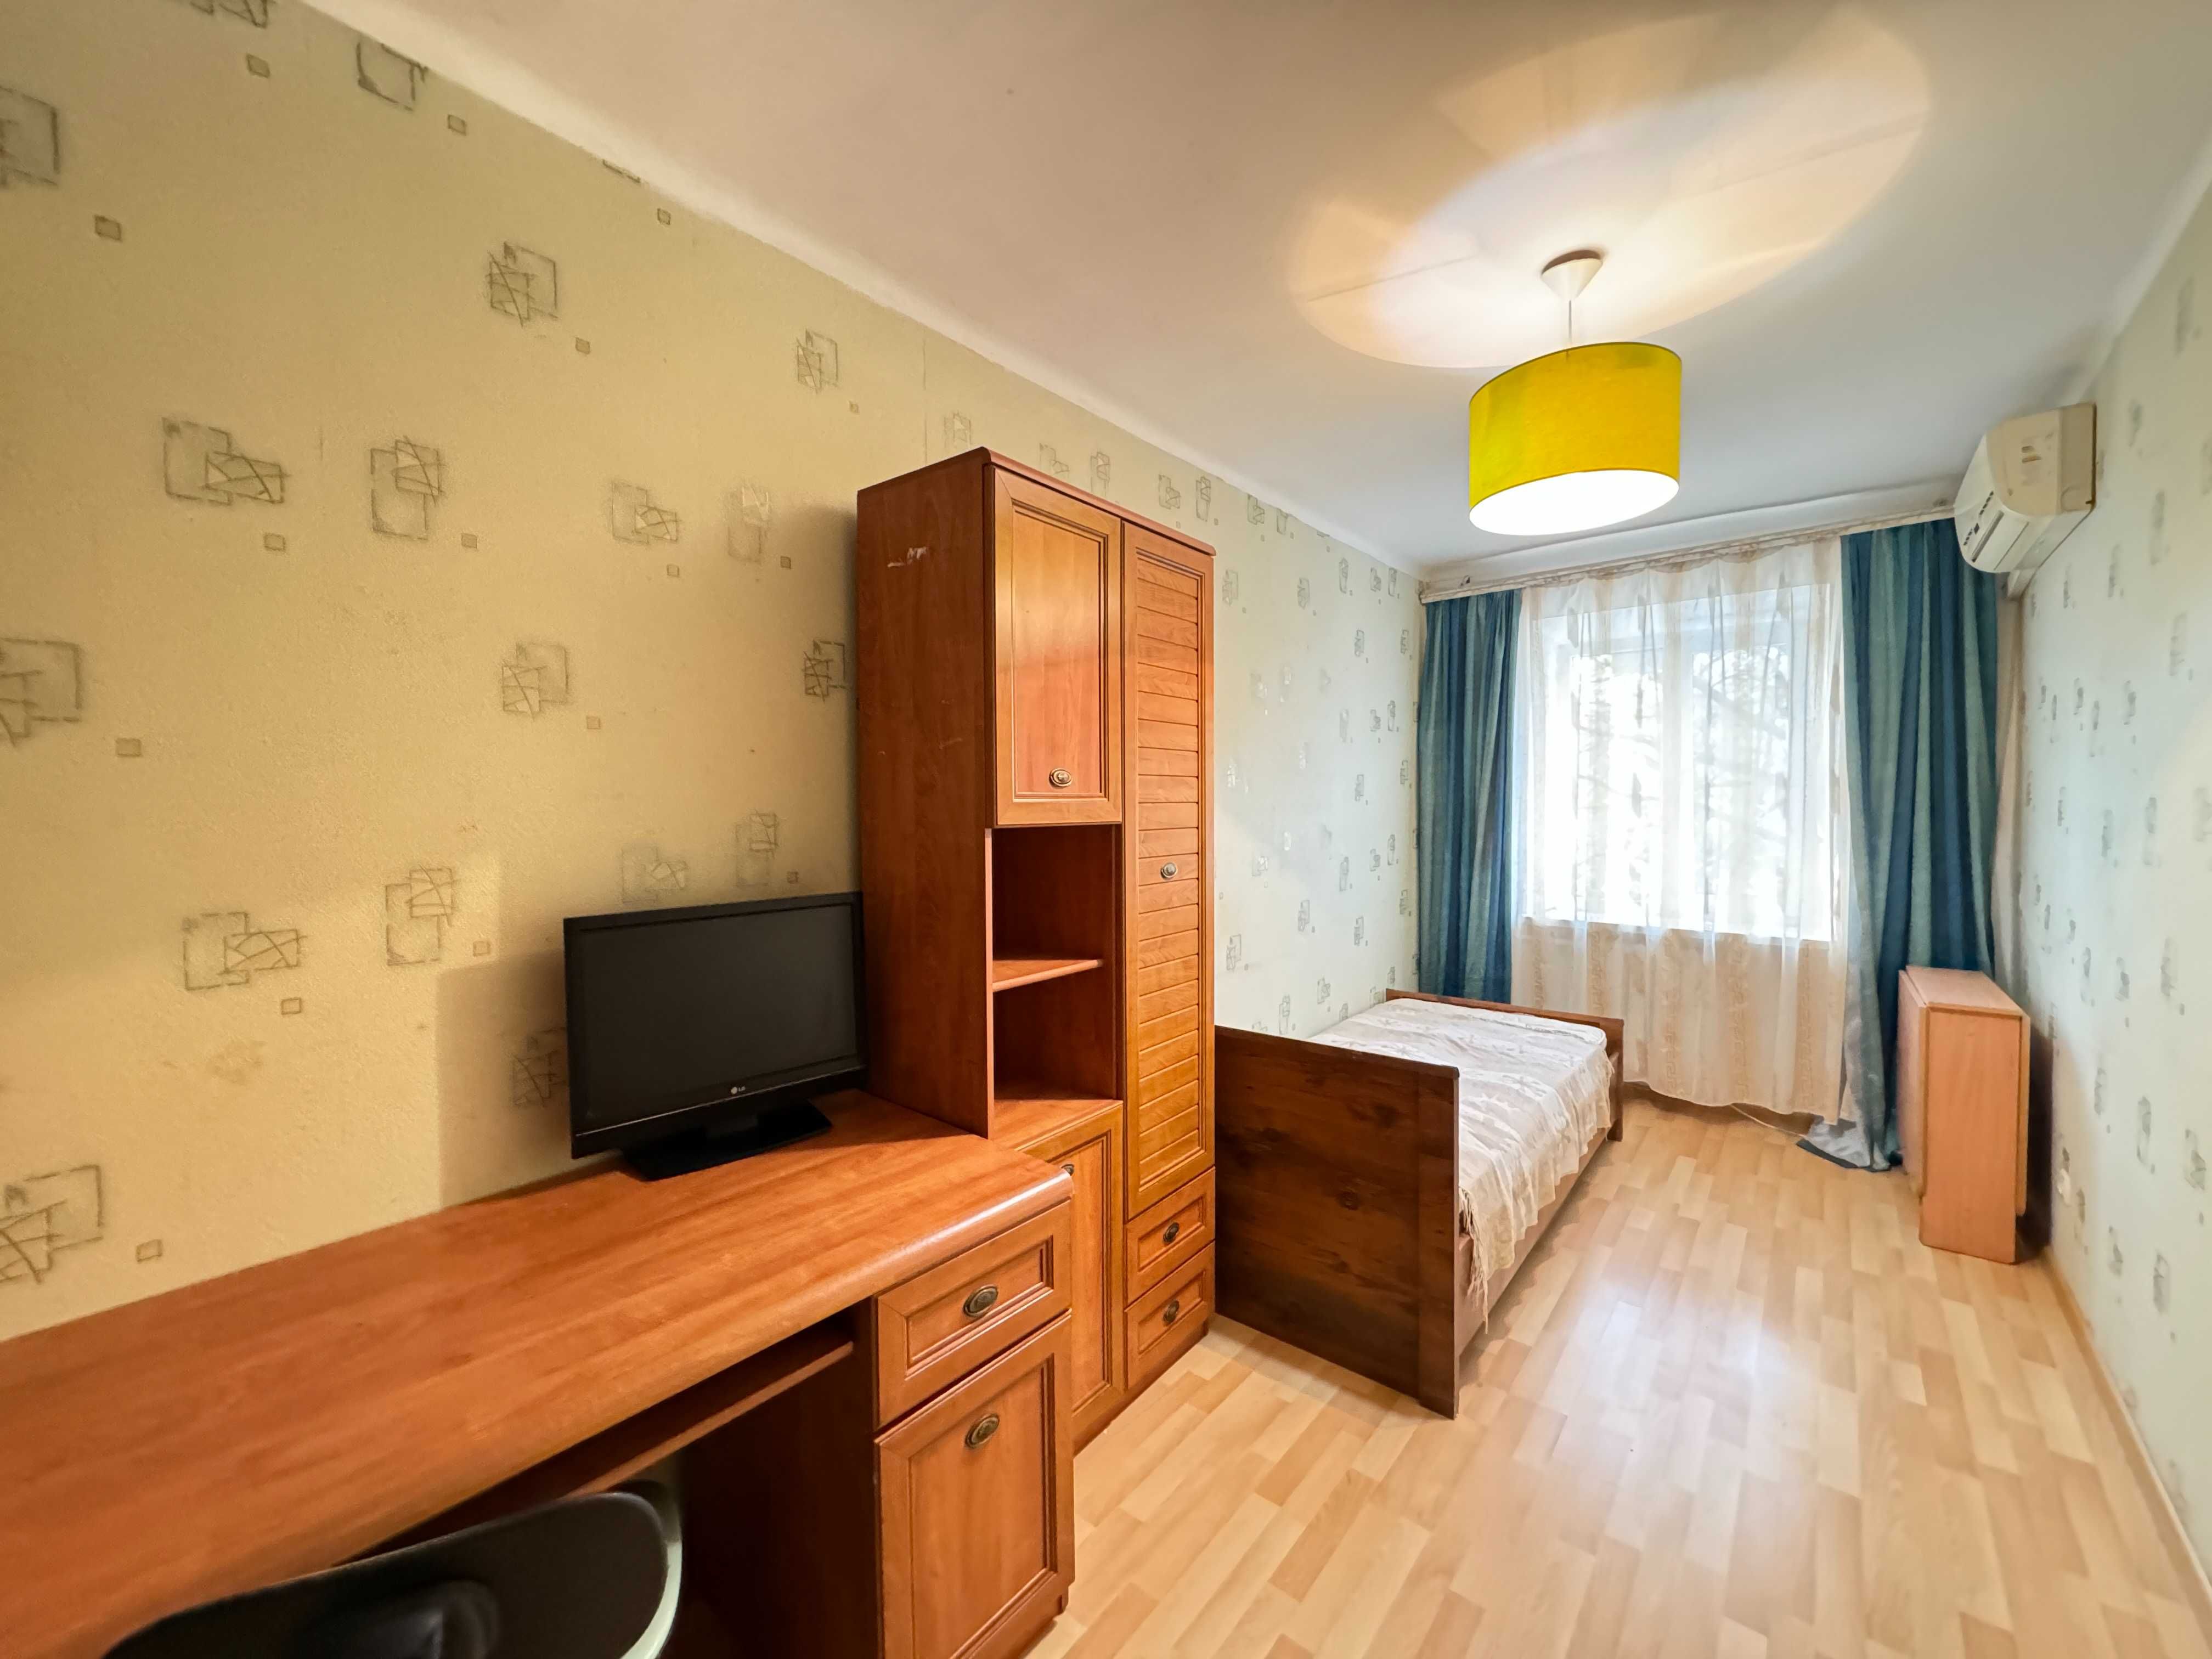 Продам 3 комнатную квартиру возле парка Горького! Средний этаж!